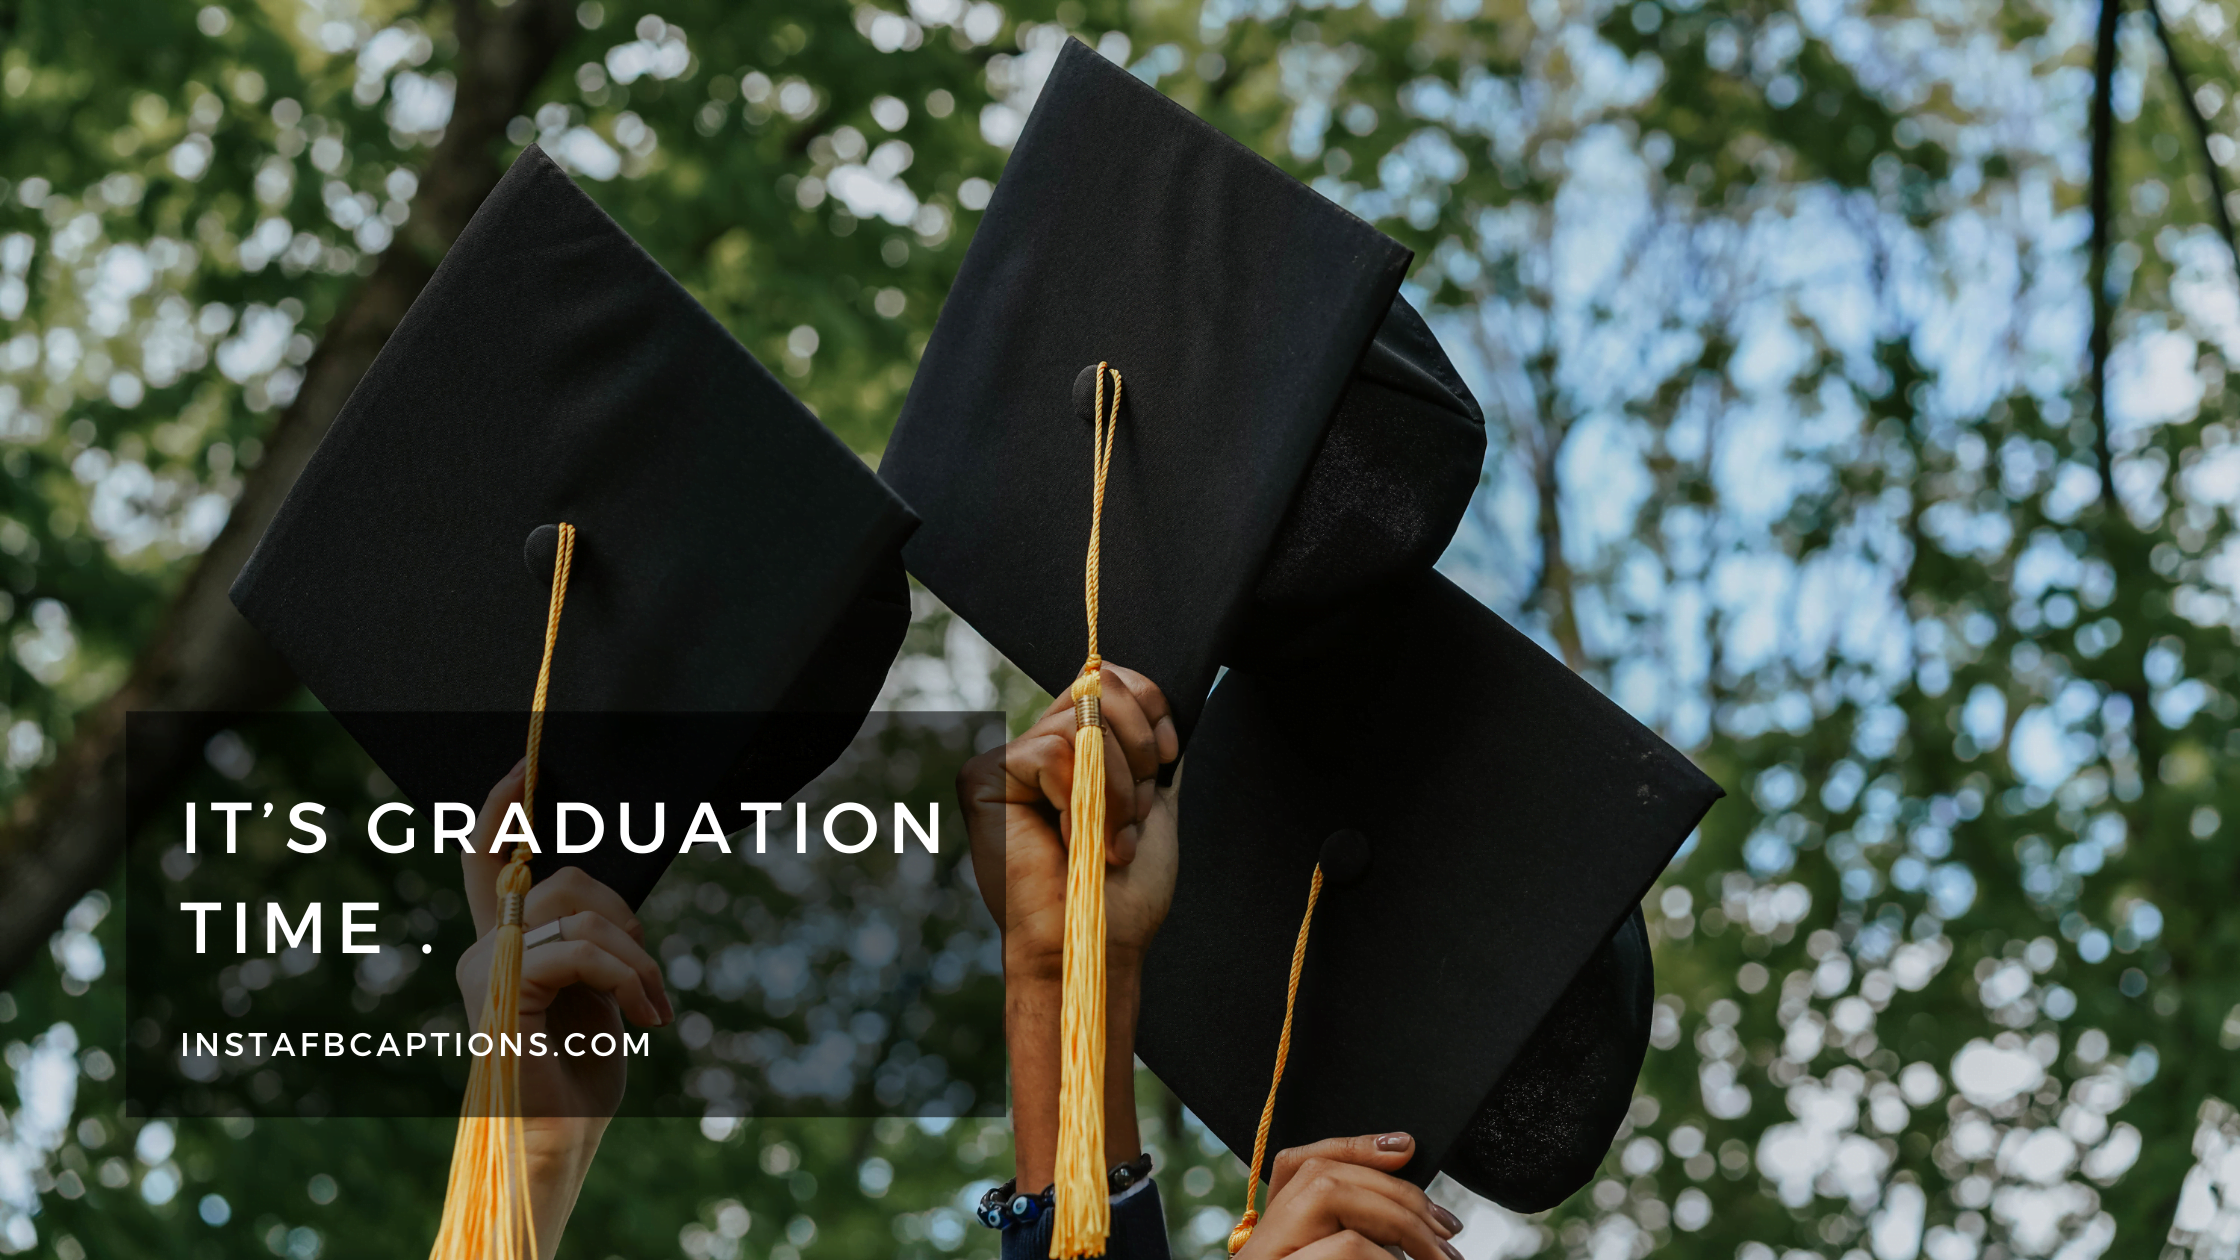 It’s graduation time. graduation captions - Graduation Captions for Seniors - 420+ Classy Graduation Instagram Captions To Commemorate